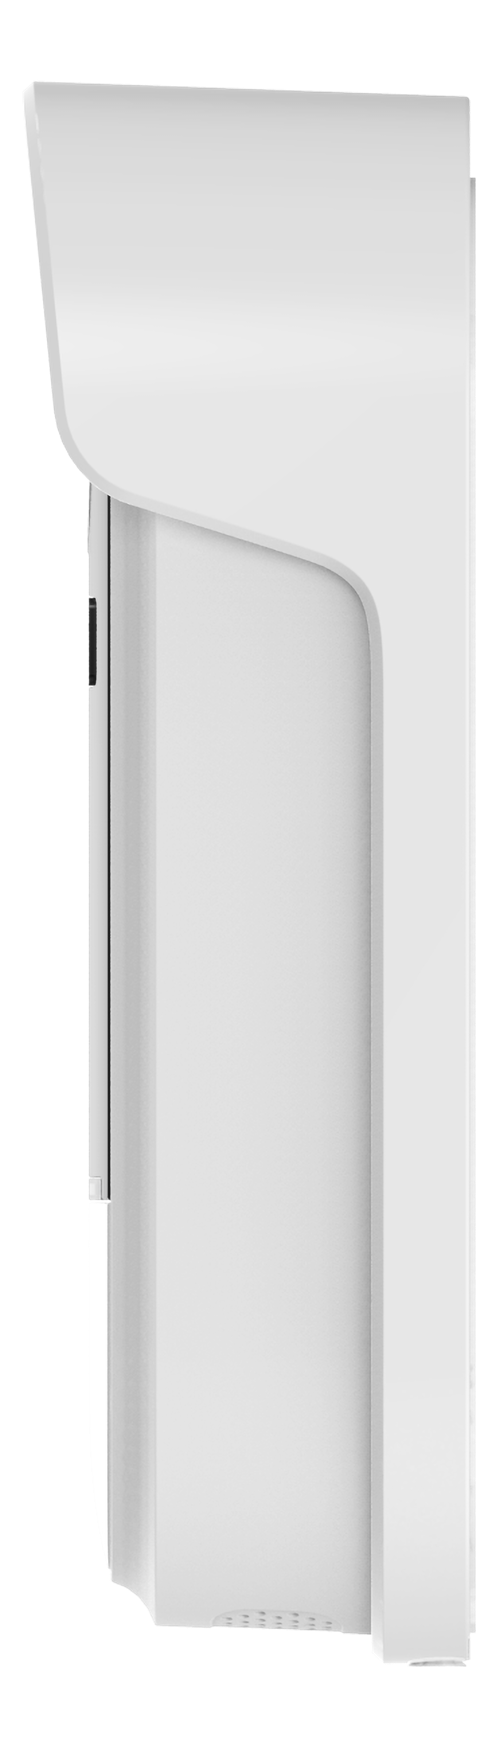 Deltaco Smart Home WiFi dørklokke med kamera, 1080p, IP65 værbestandig, hvit/svart